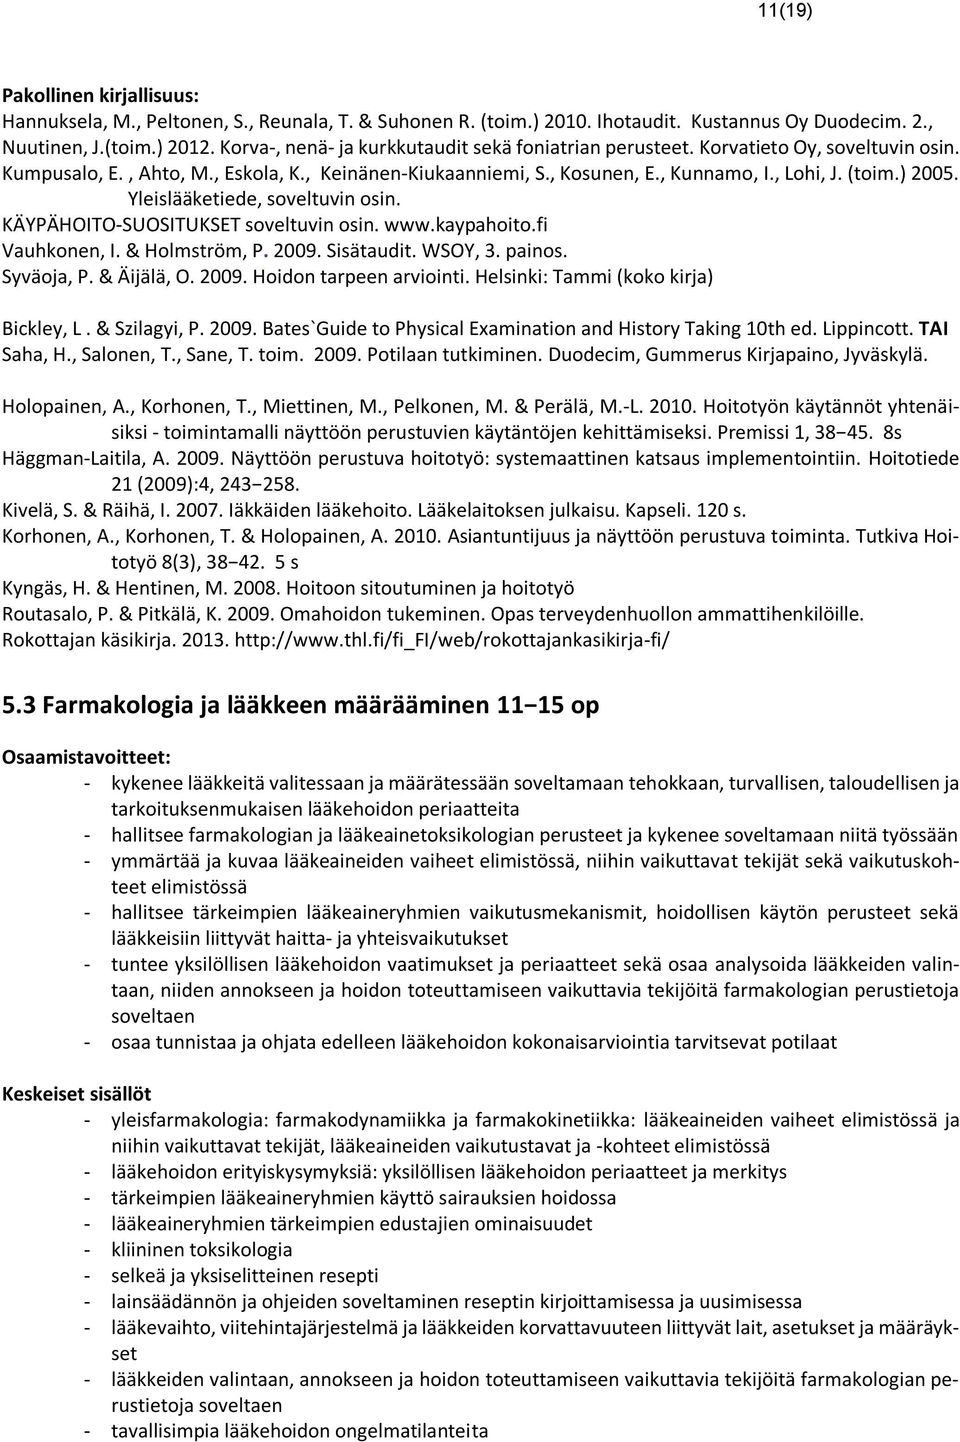 ) 2005. Yleislääketiede, soveltuvin osin. KÄYPÄHOITO-SUOSITUKSET soveltuvin osin. www.kaypahoito.fi Vauhkonen, I. & Holmström, P. 2009. Sisätaudit. WSOY, 3. painos. Syväoja, P. & Äijälä, O. 2009. Hoidon tarpeen arviointi.